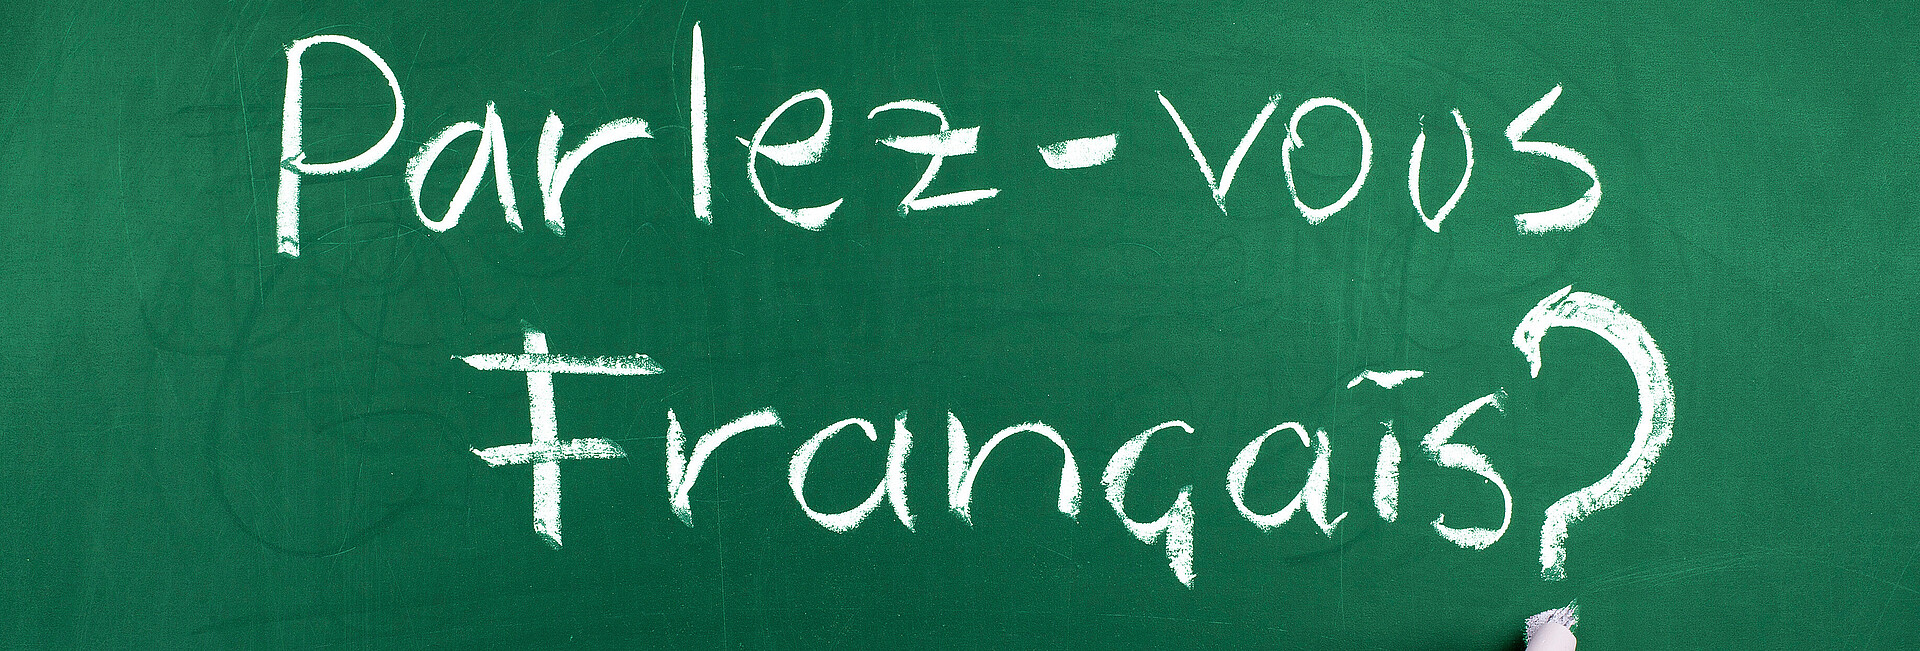 Auf einer grünen Tafel steht mit weißer Kreide: Parlez-vous Francais? Sprechen sie französisch?